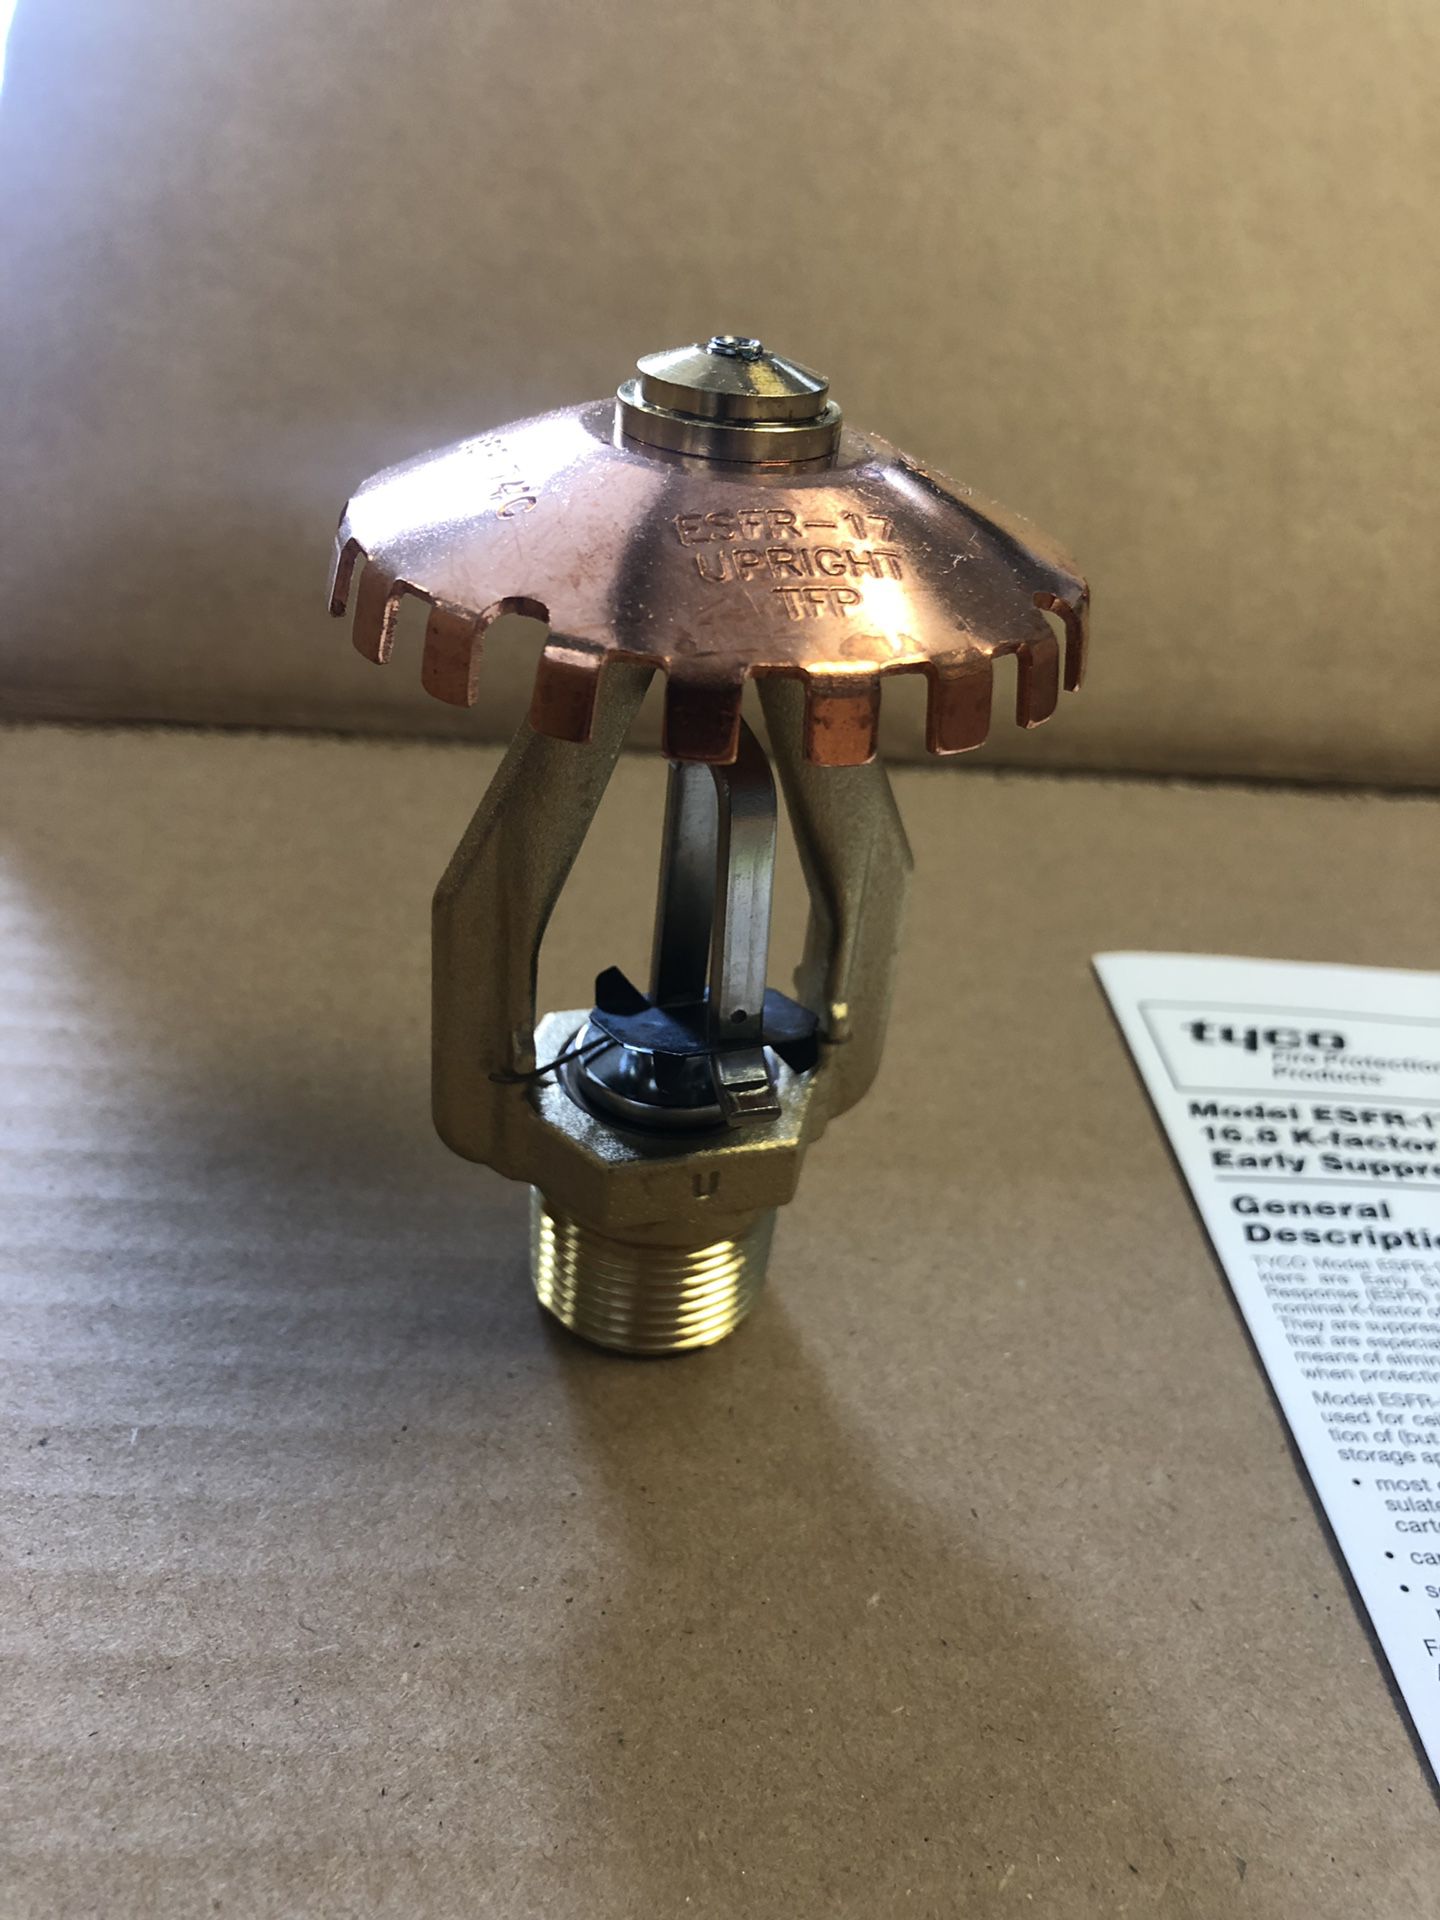 New Tyco TY7126 Upright Brass Sprinkler Head 3/4" NPT 214*F ESFR-17 16.8 K